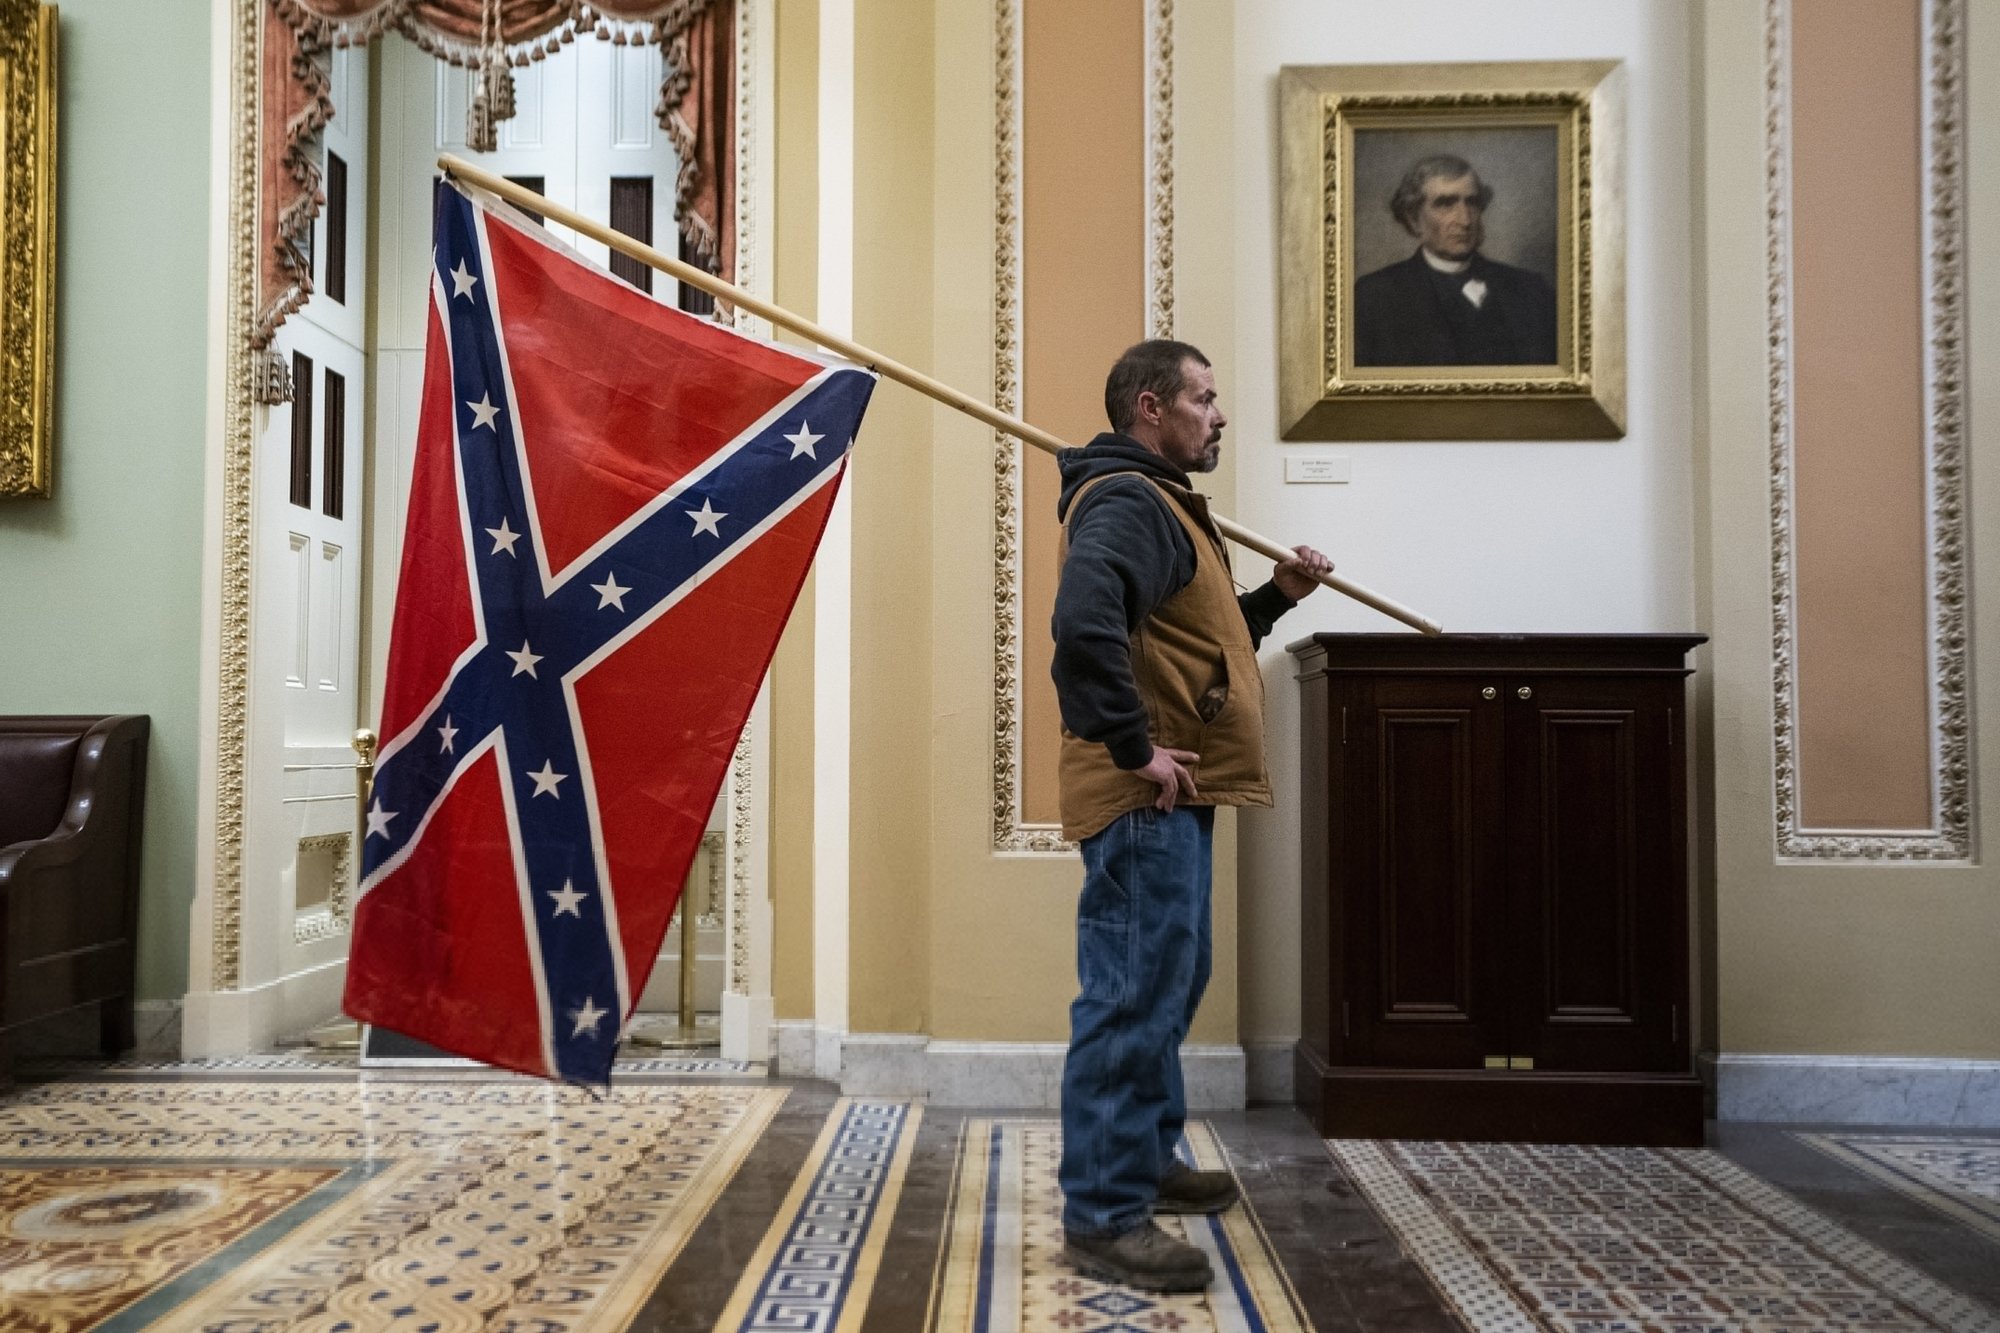 Le 6 janvier 2021, les partisans de l’ex-président Donald Trump, ici avec le drapeau des Confédérés, ont envahi le Capitole pour invalider l’élection du 3 novembre.